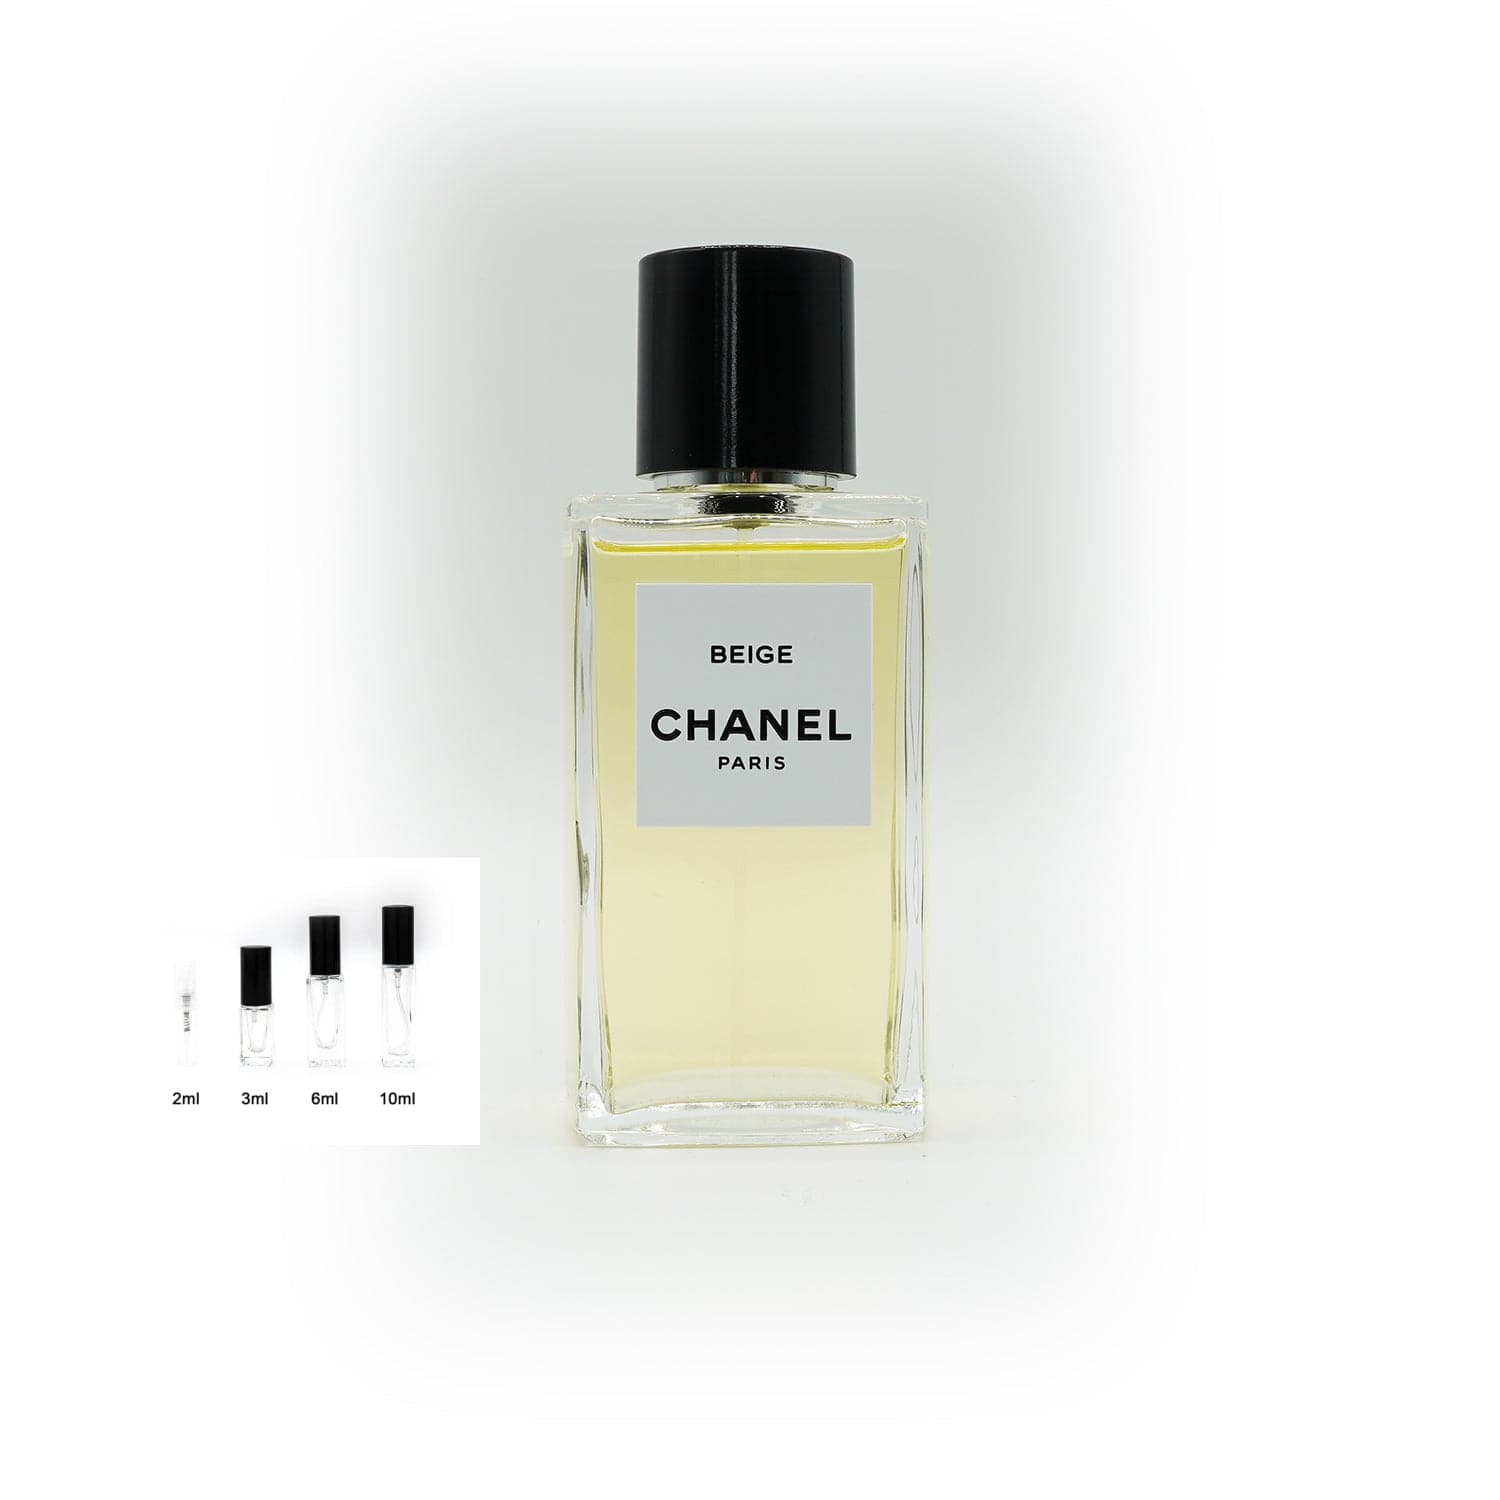 Les Exclusifs de Chanel | Beige Abfüllung